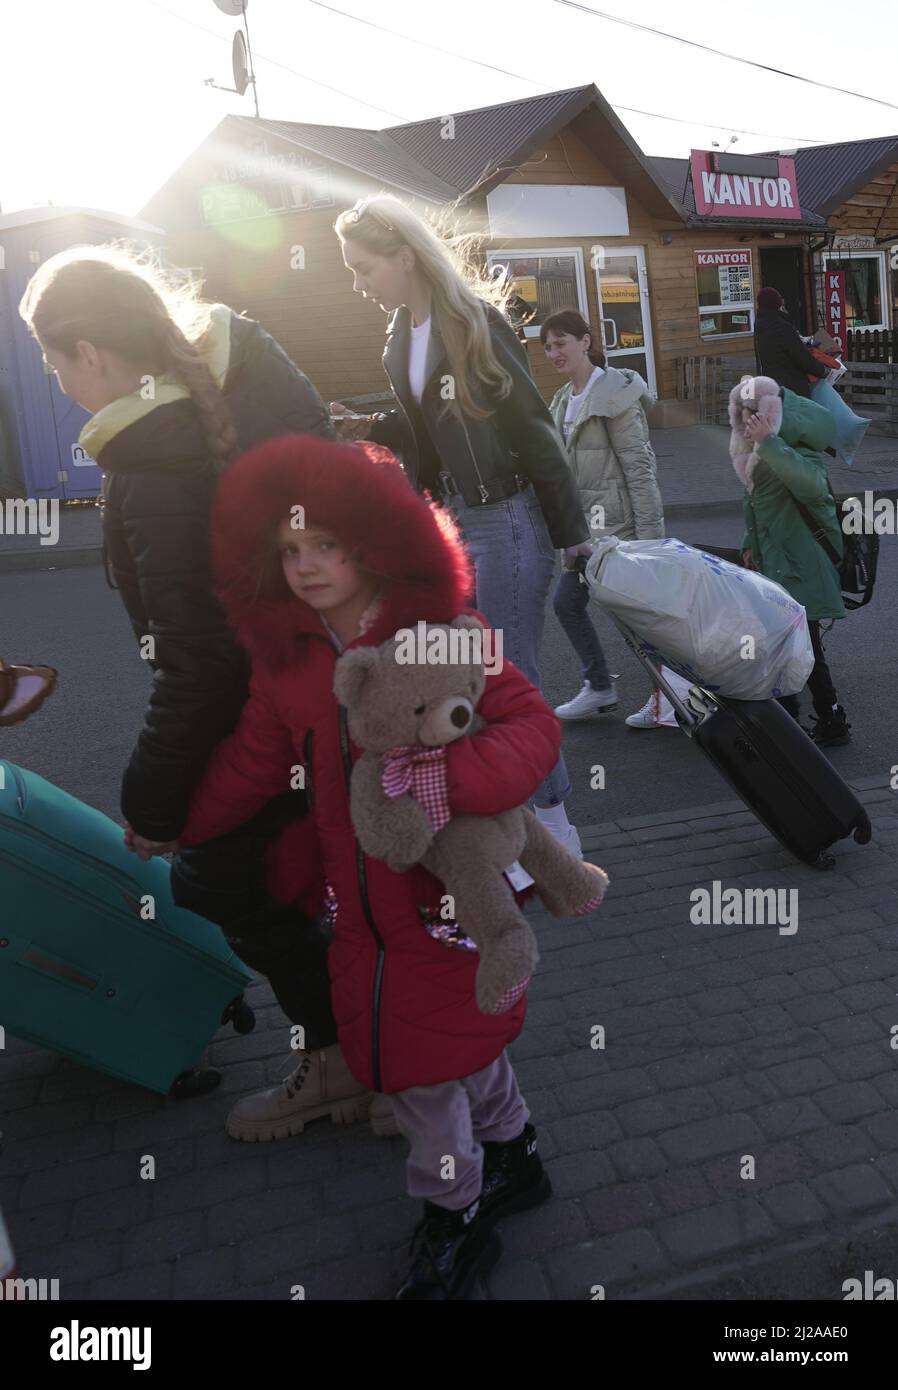 MEDYKA, POLEN - 28. MÄRZ 2022 - Ein Mädchen trägt einen Teddybär, als ukrainische Flüchtlinge, die vor der russischen Invasion fliehen, ihre Koffer vor dem Medyka-Sh ziehen Stockfoto